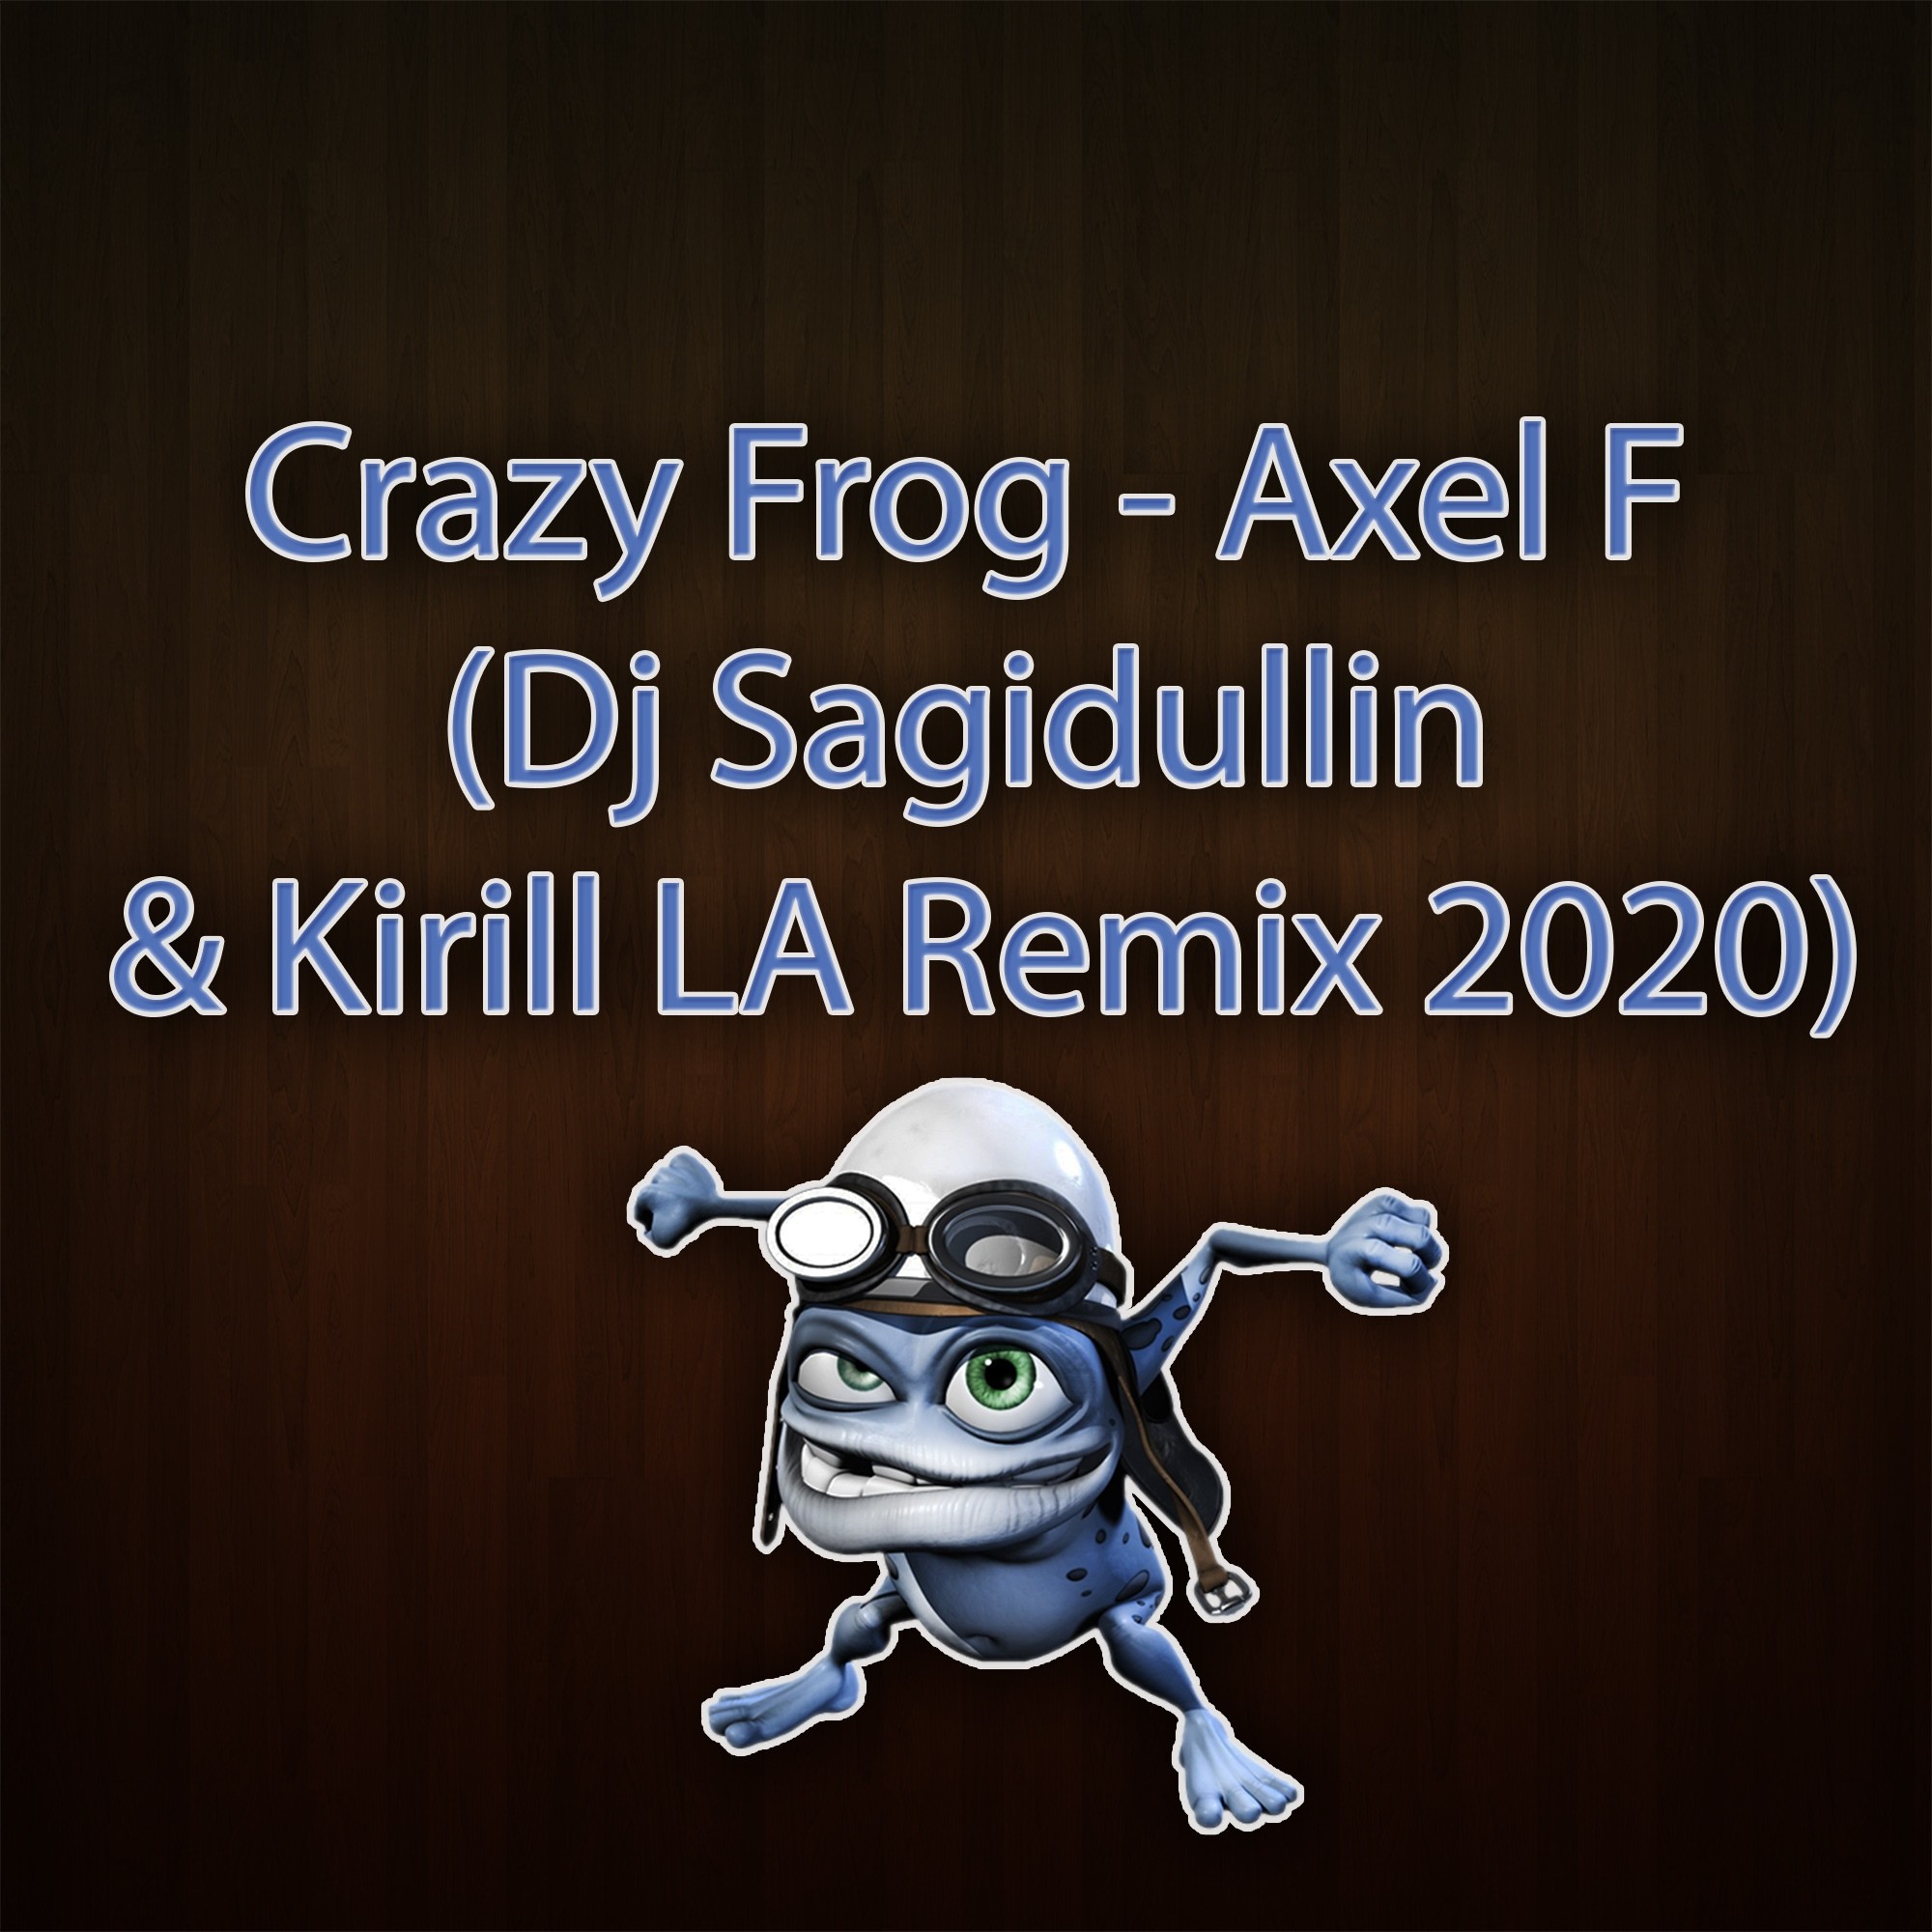 Crazy Frog. Crazy Frog Axel. Crazy Frog Axel f. Crazy Frog gif. Axel f remix